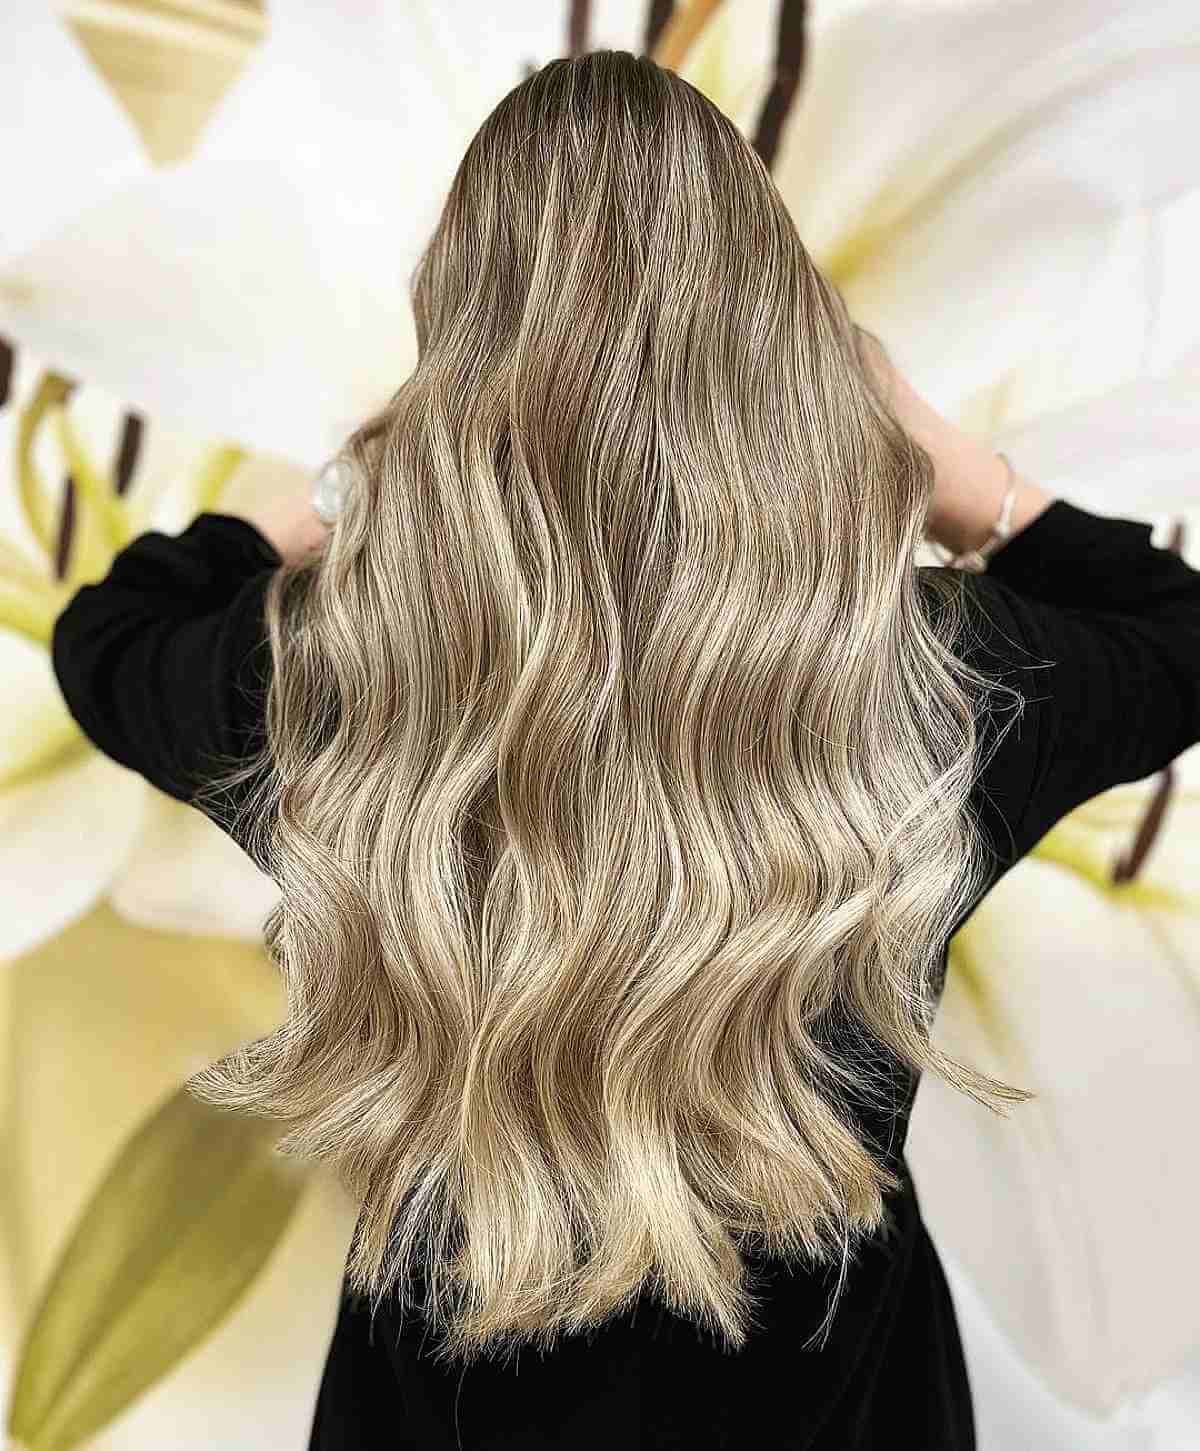 Waist-Length Brunette Hair with Light Blonde Highlights